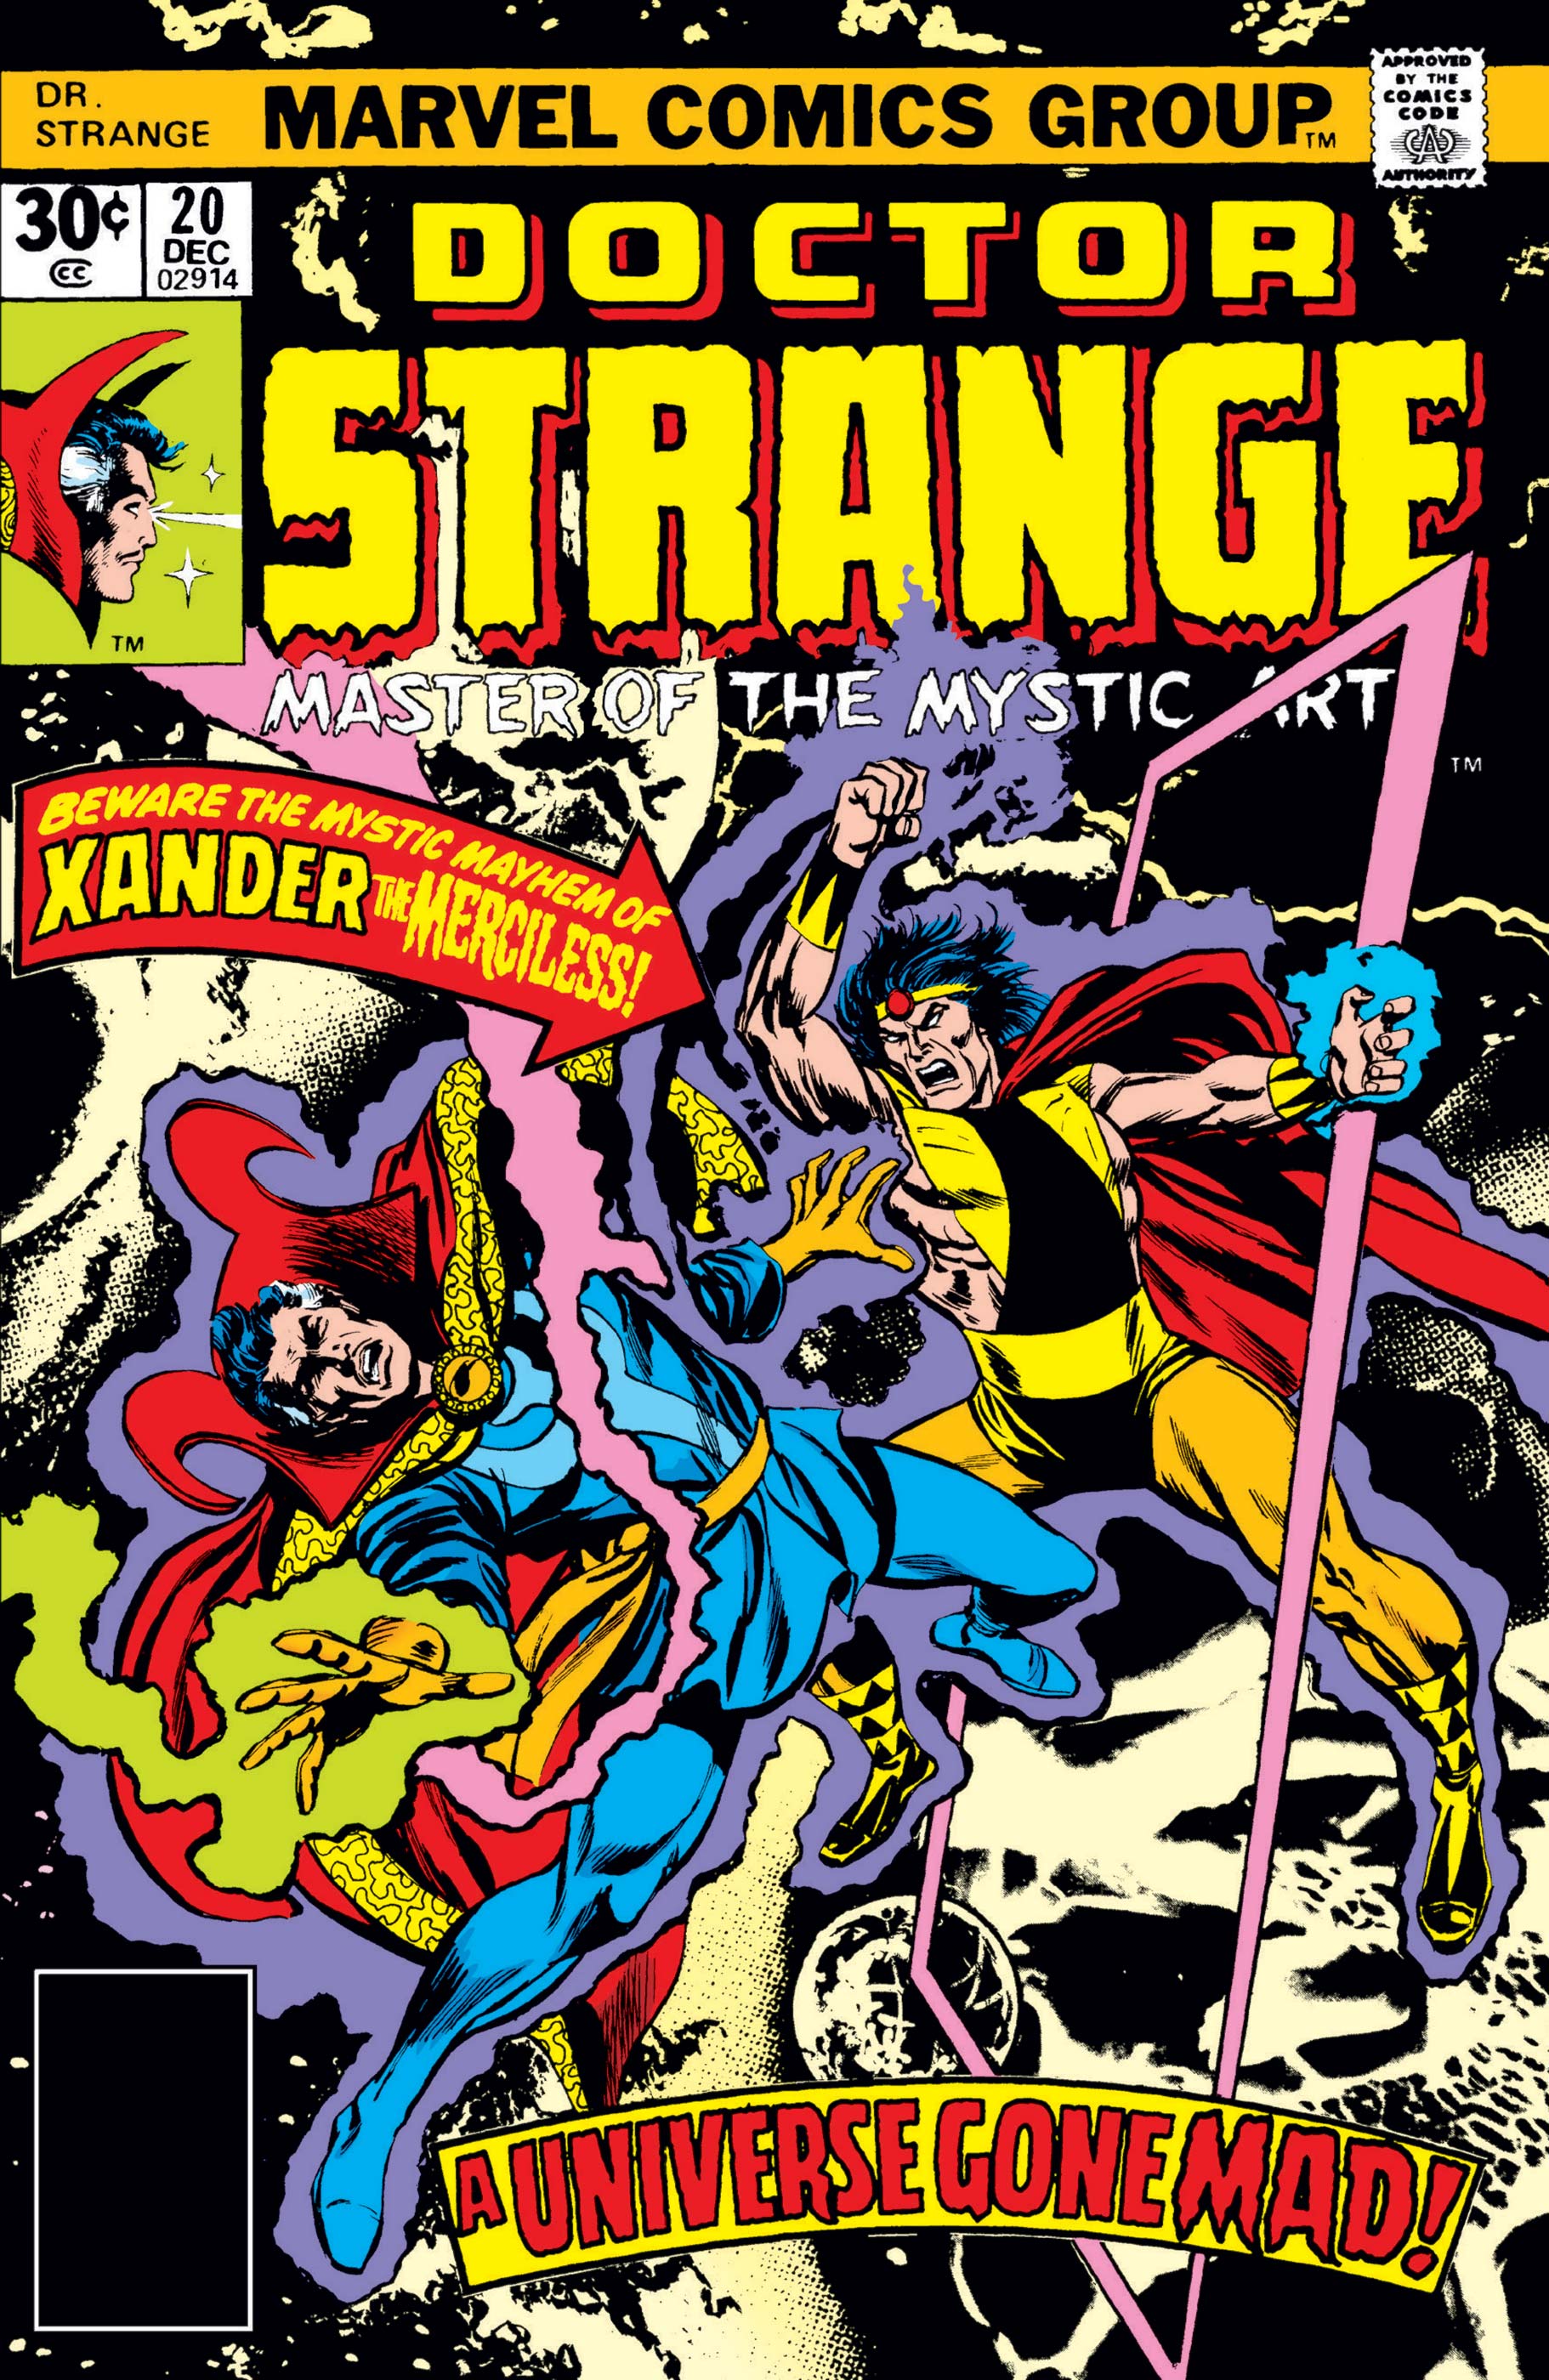 Doctor Strange (1974) #20